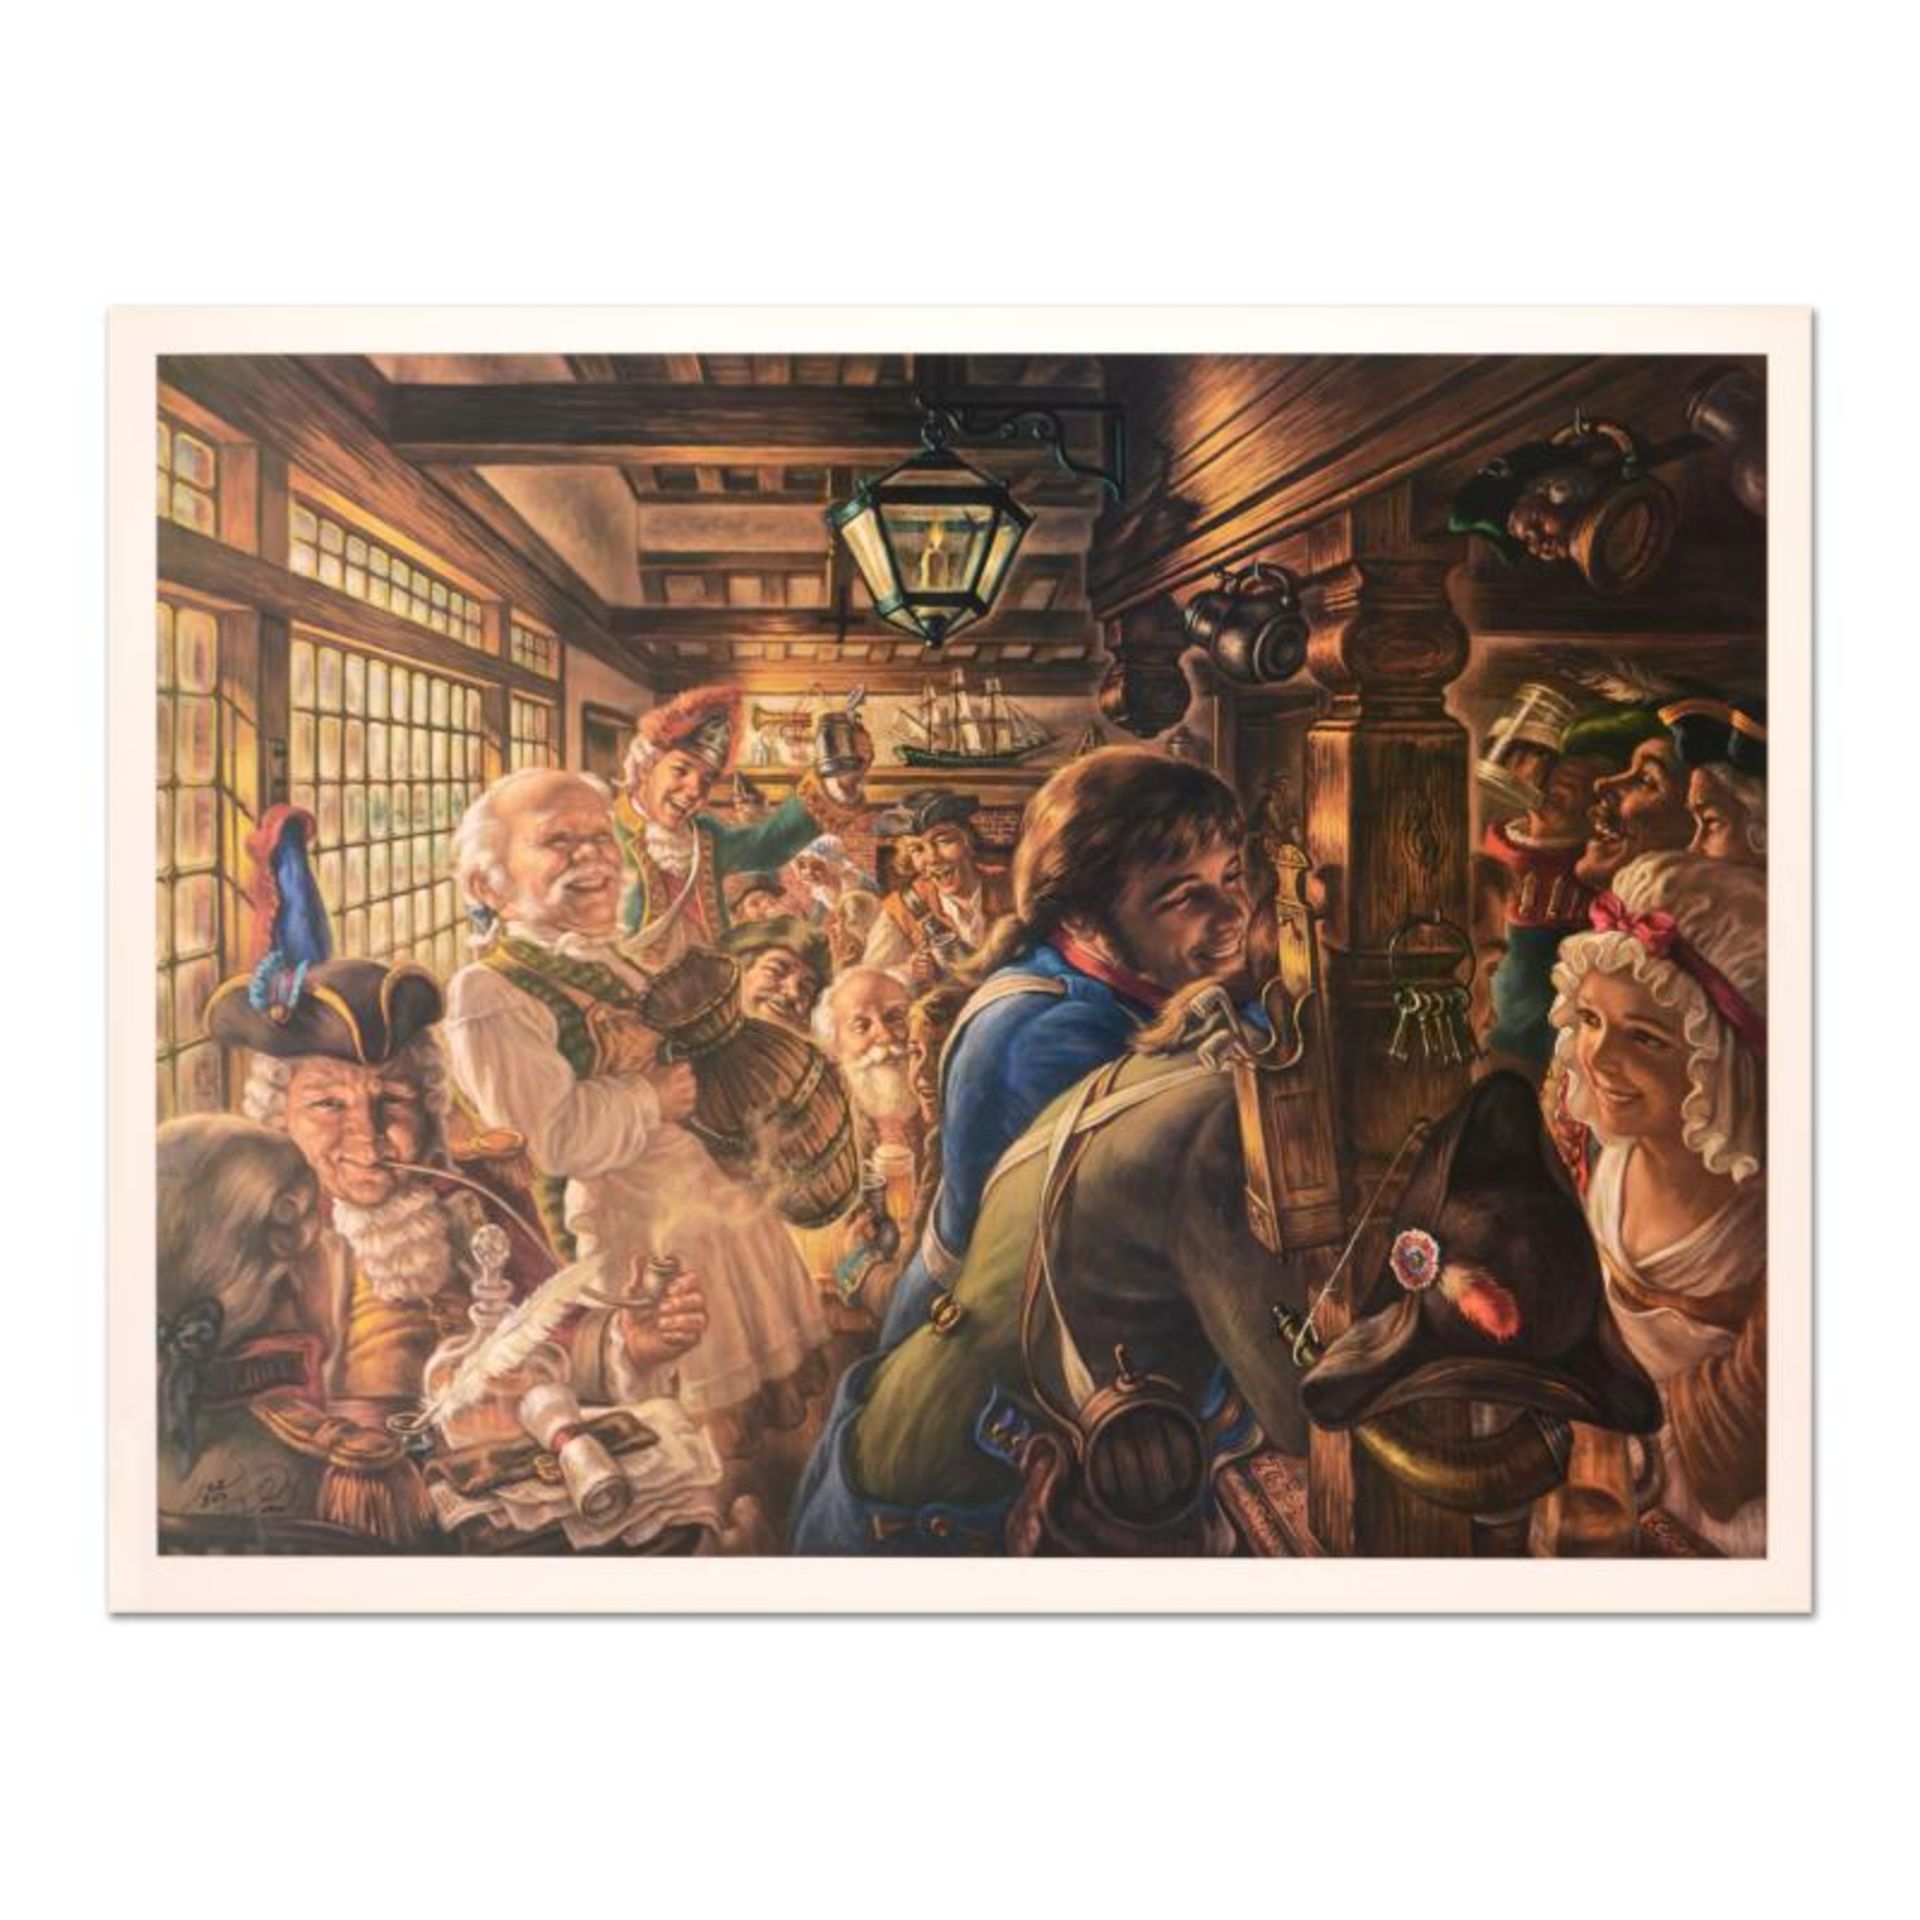 Yankees Tavern 1776 by Virginia Dan (1922-2014)